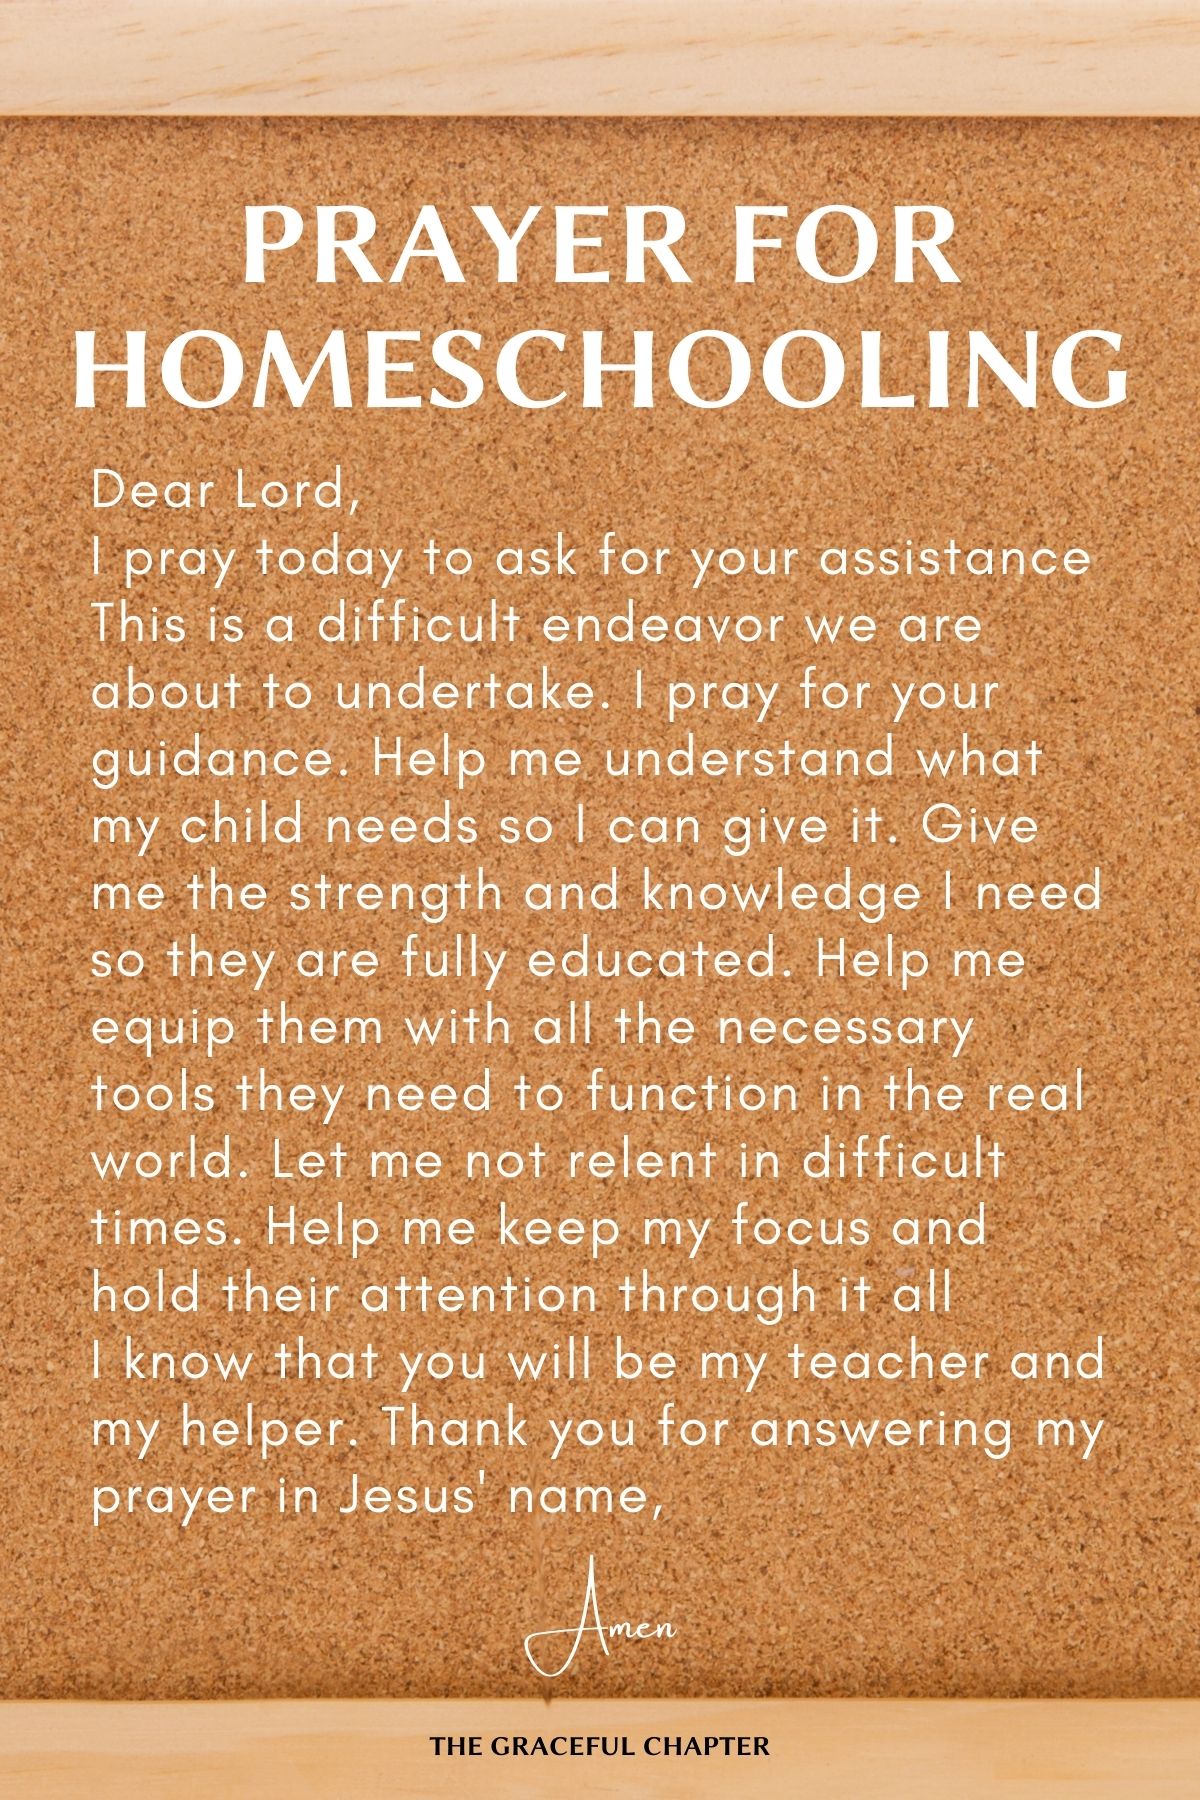 Prayer for homeschooling